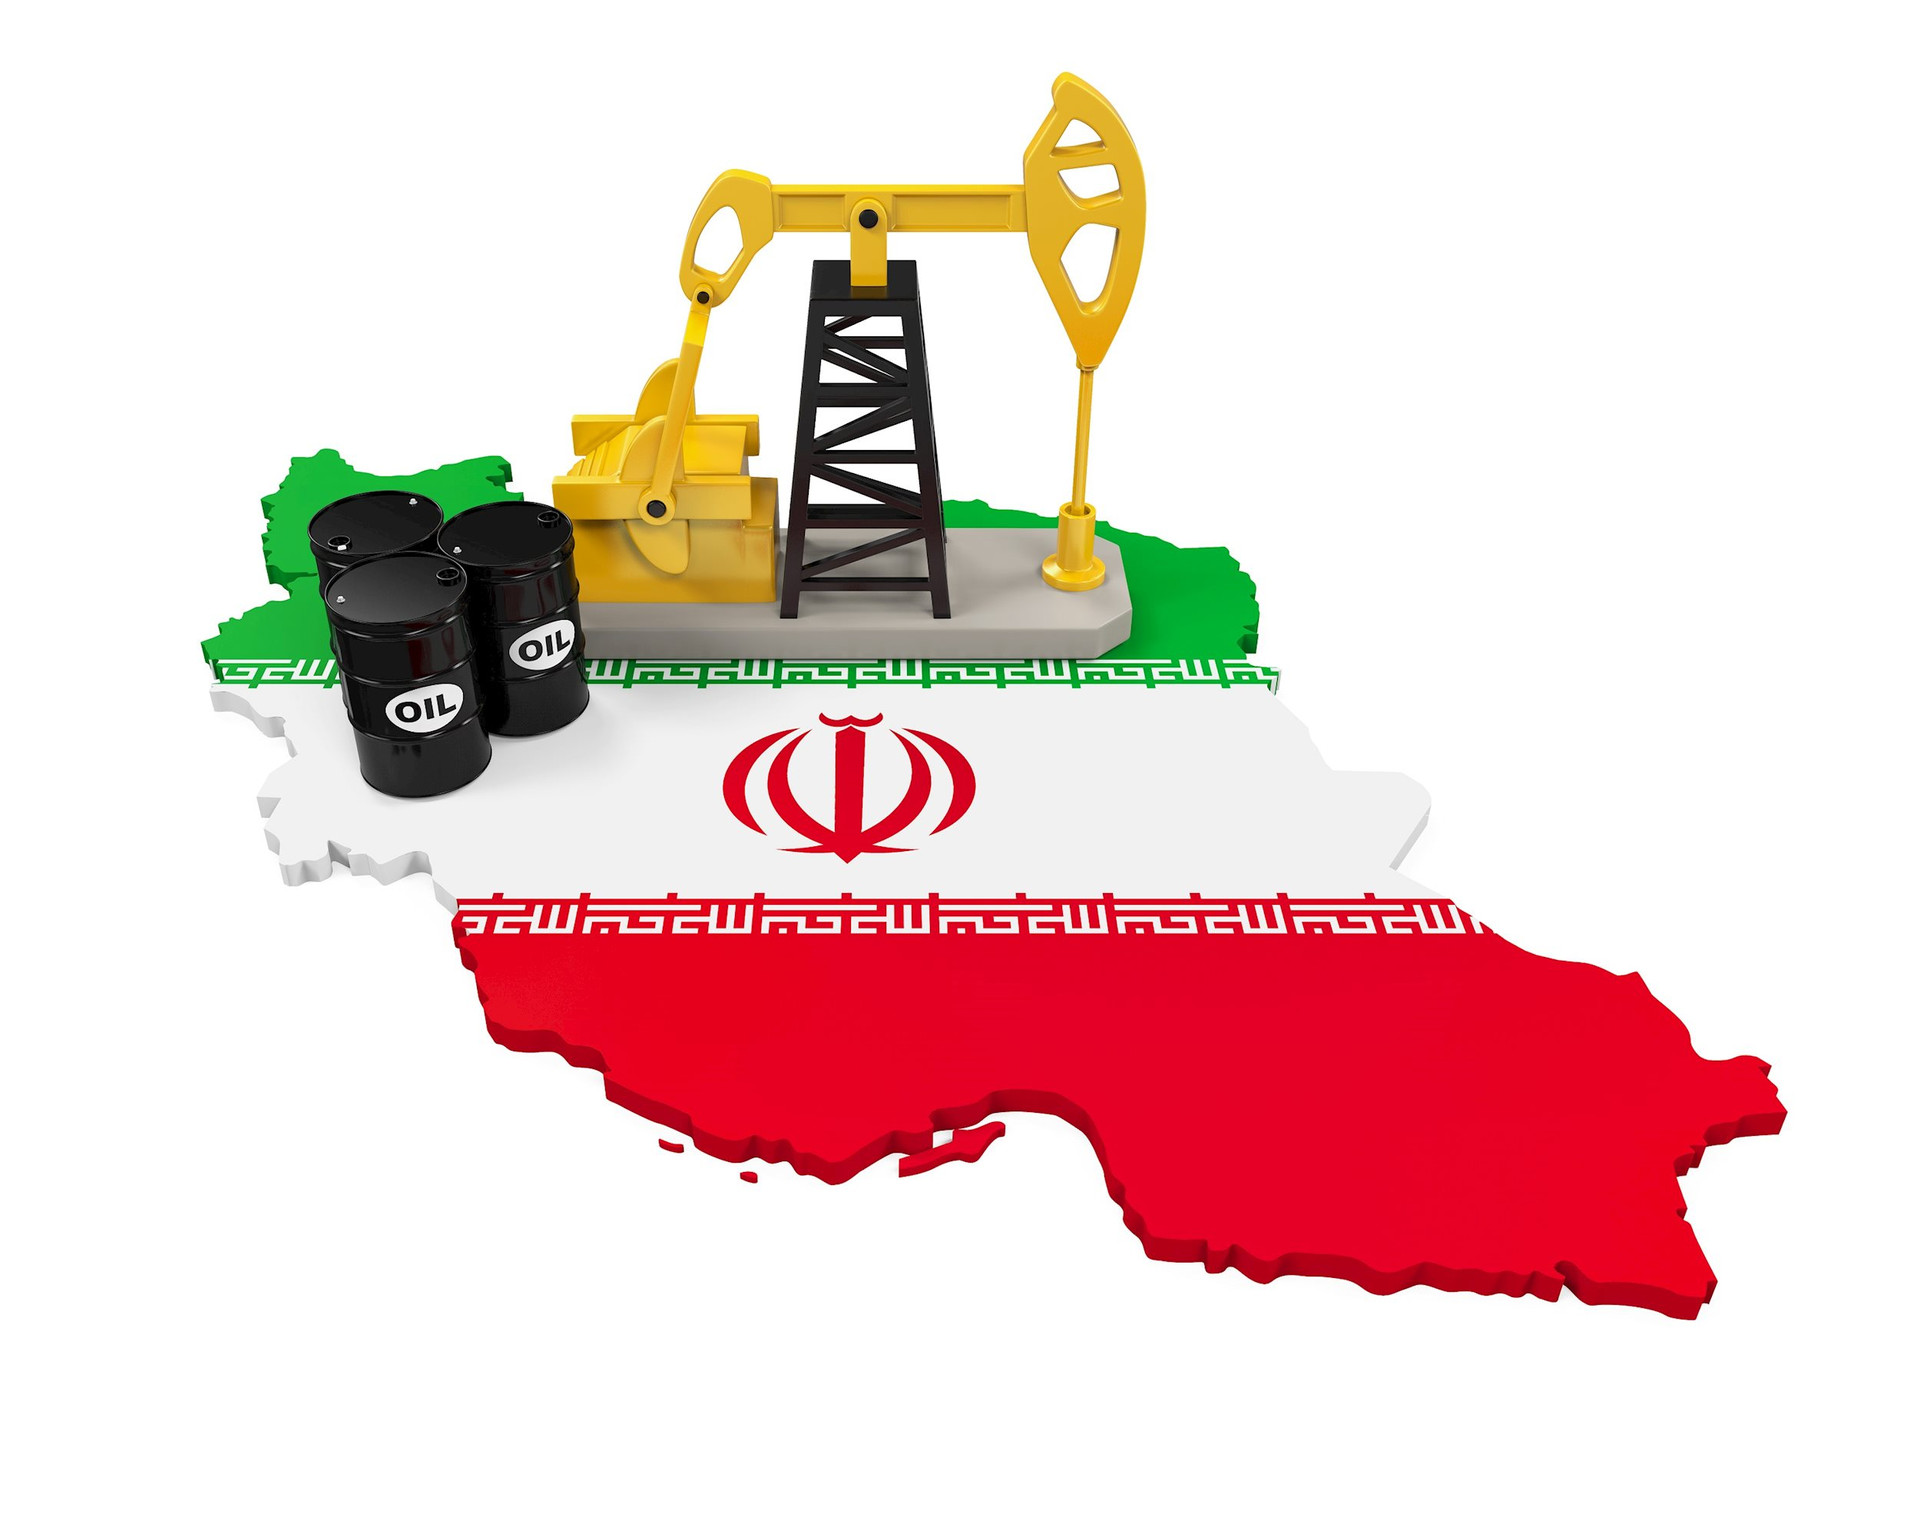 Hô hào đồng minh cấm vận Iran, vì sao Mỹ vẫn chỉ có thể đứng nhìn Trung Quốc trở thành khách “sộp” mua vàng đen của nhà nước Cộng hòa Hồi giáo? - Ảnh 1.